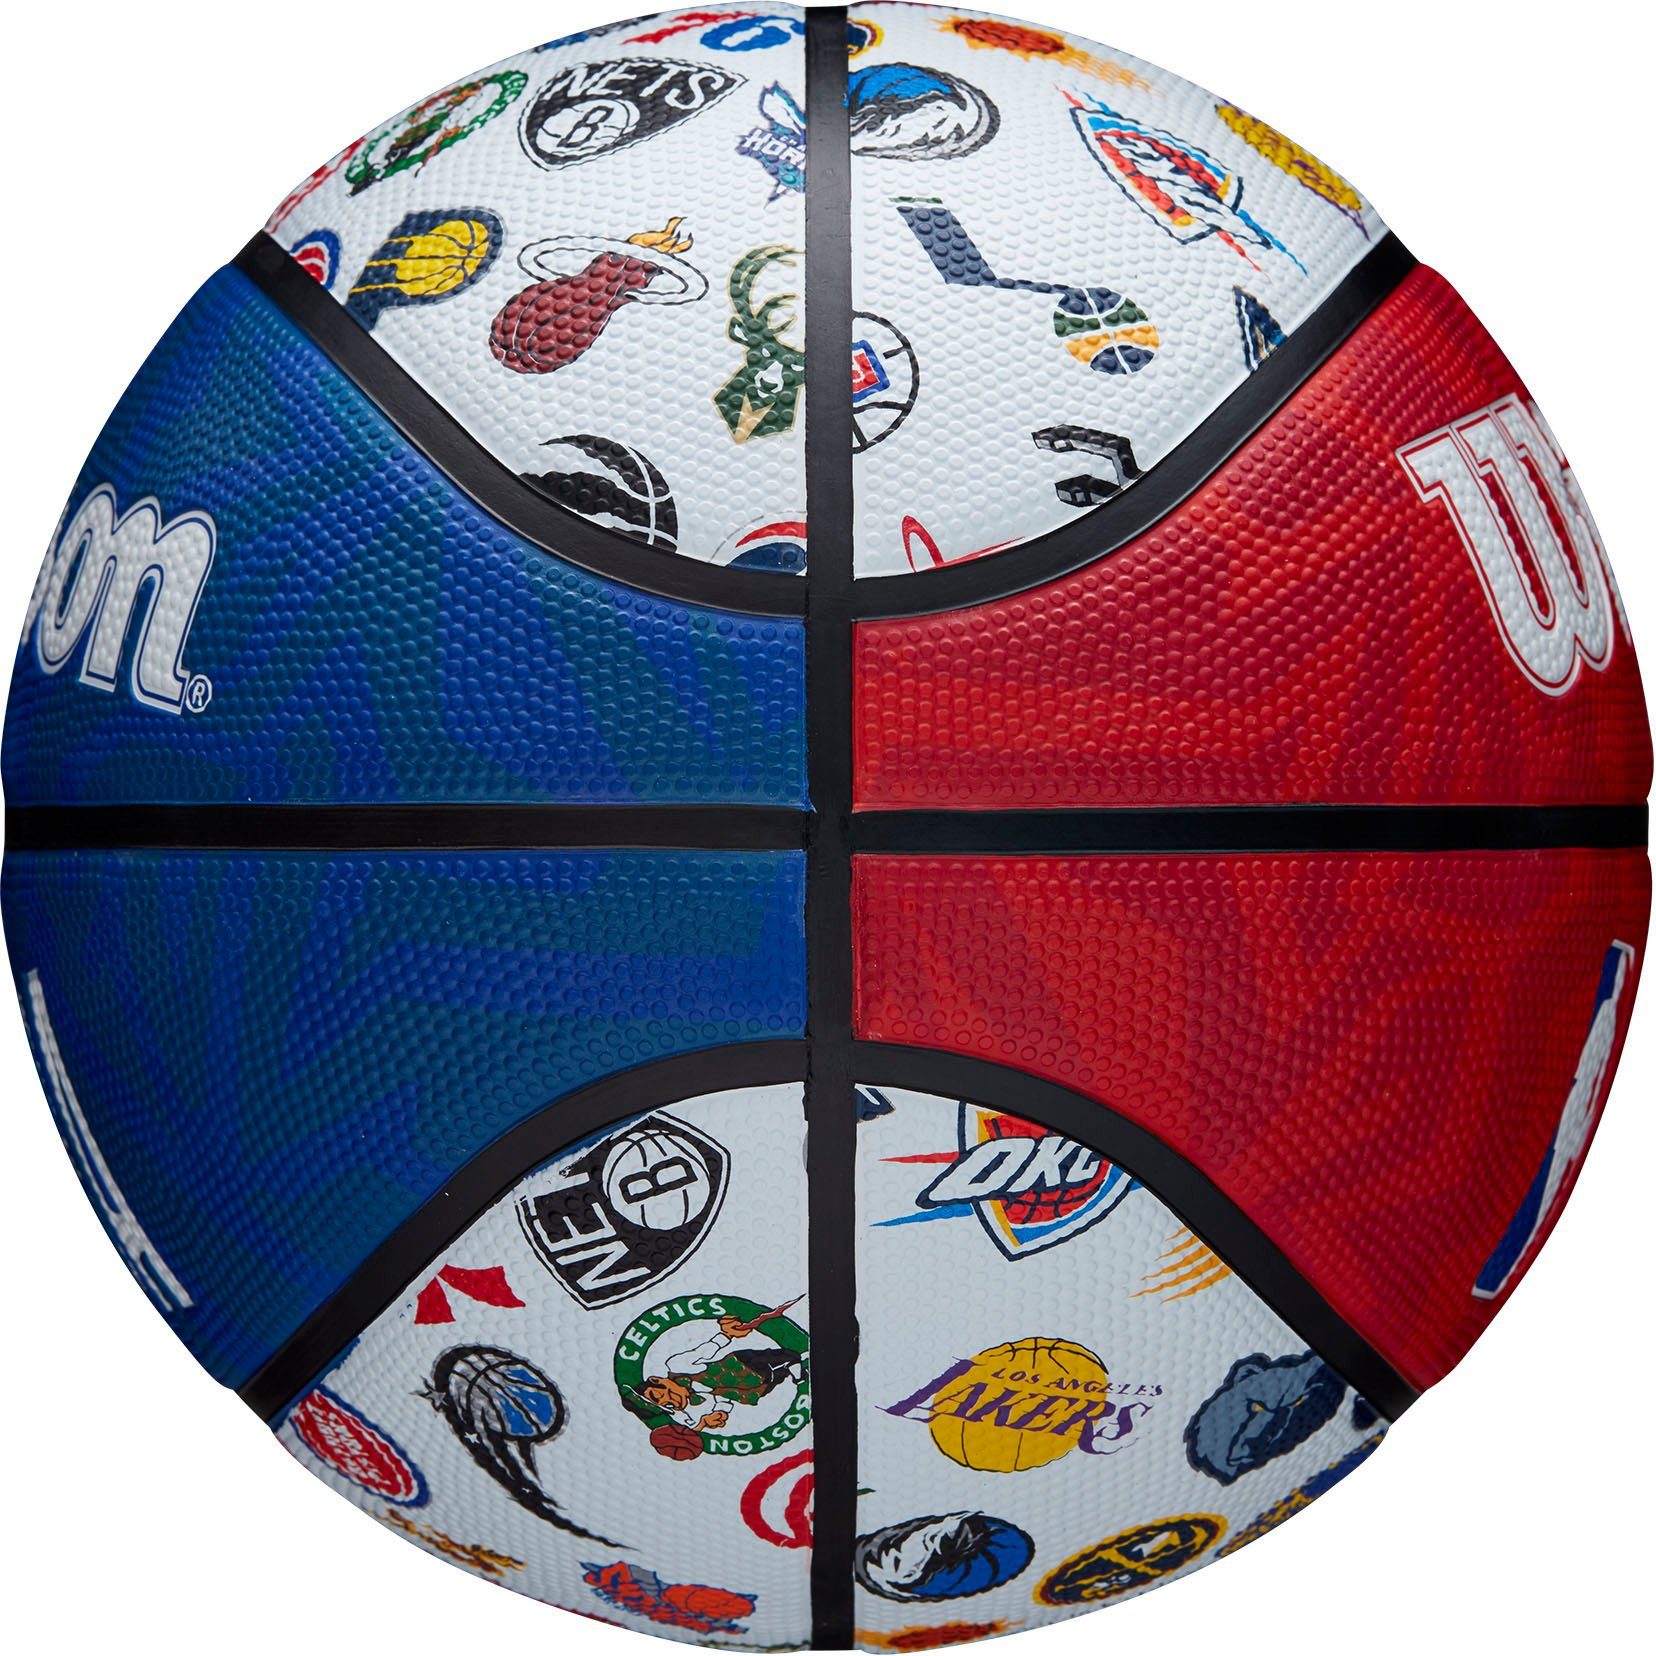 XTREM toys & sports Wilson ALL NBA Basketball RWB SZ7 BSKT TEAM